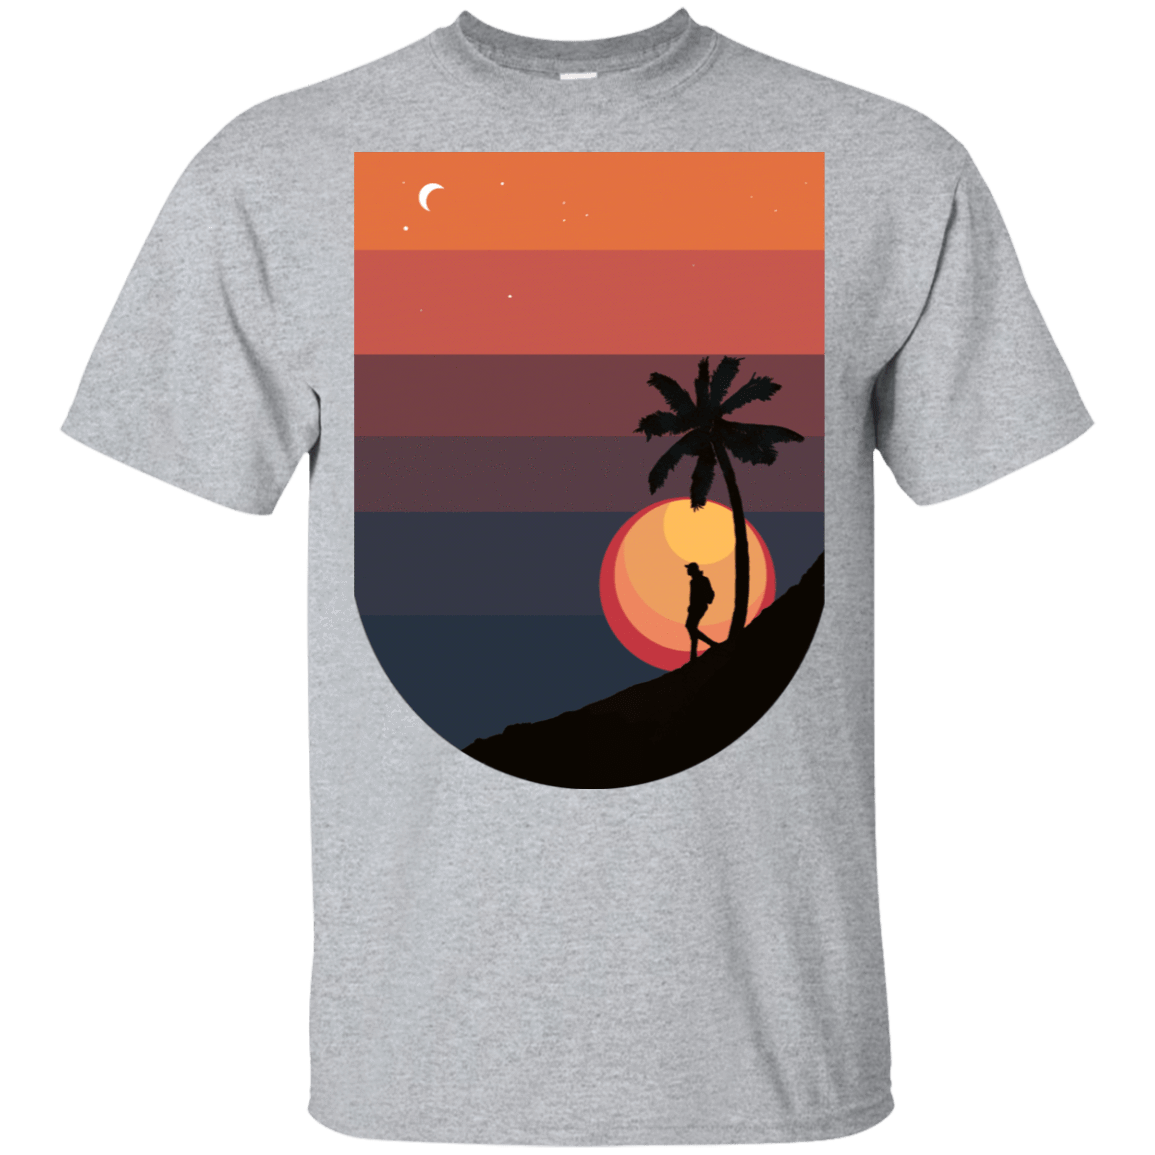 T-Shirts Sport Grey / S Sun T-Shirt